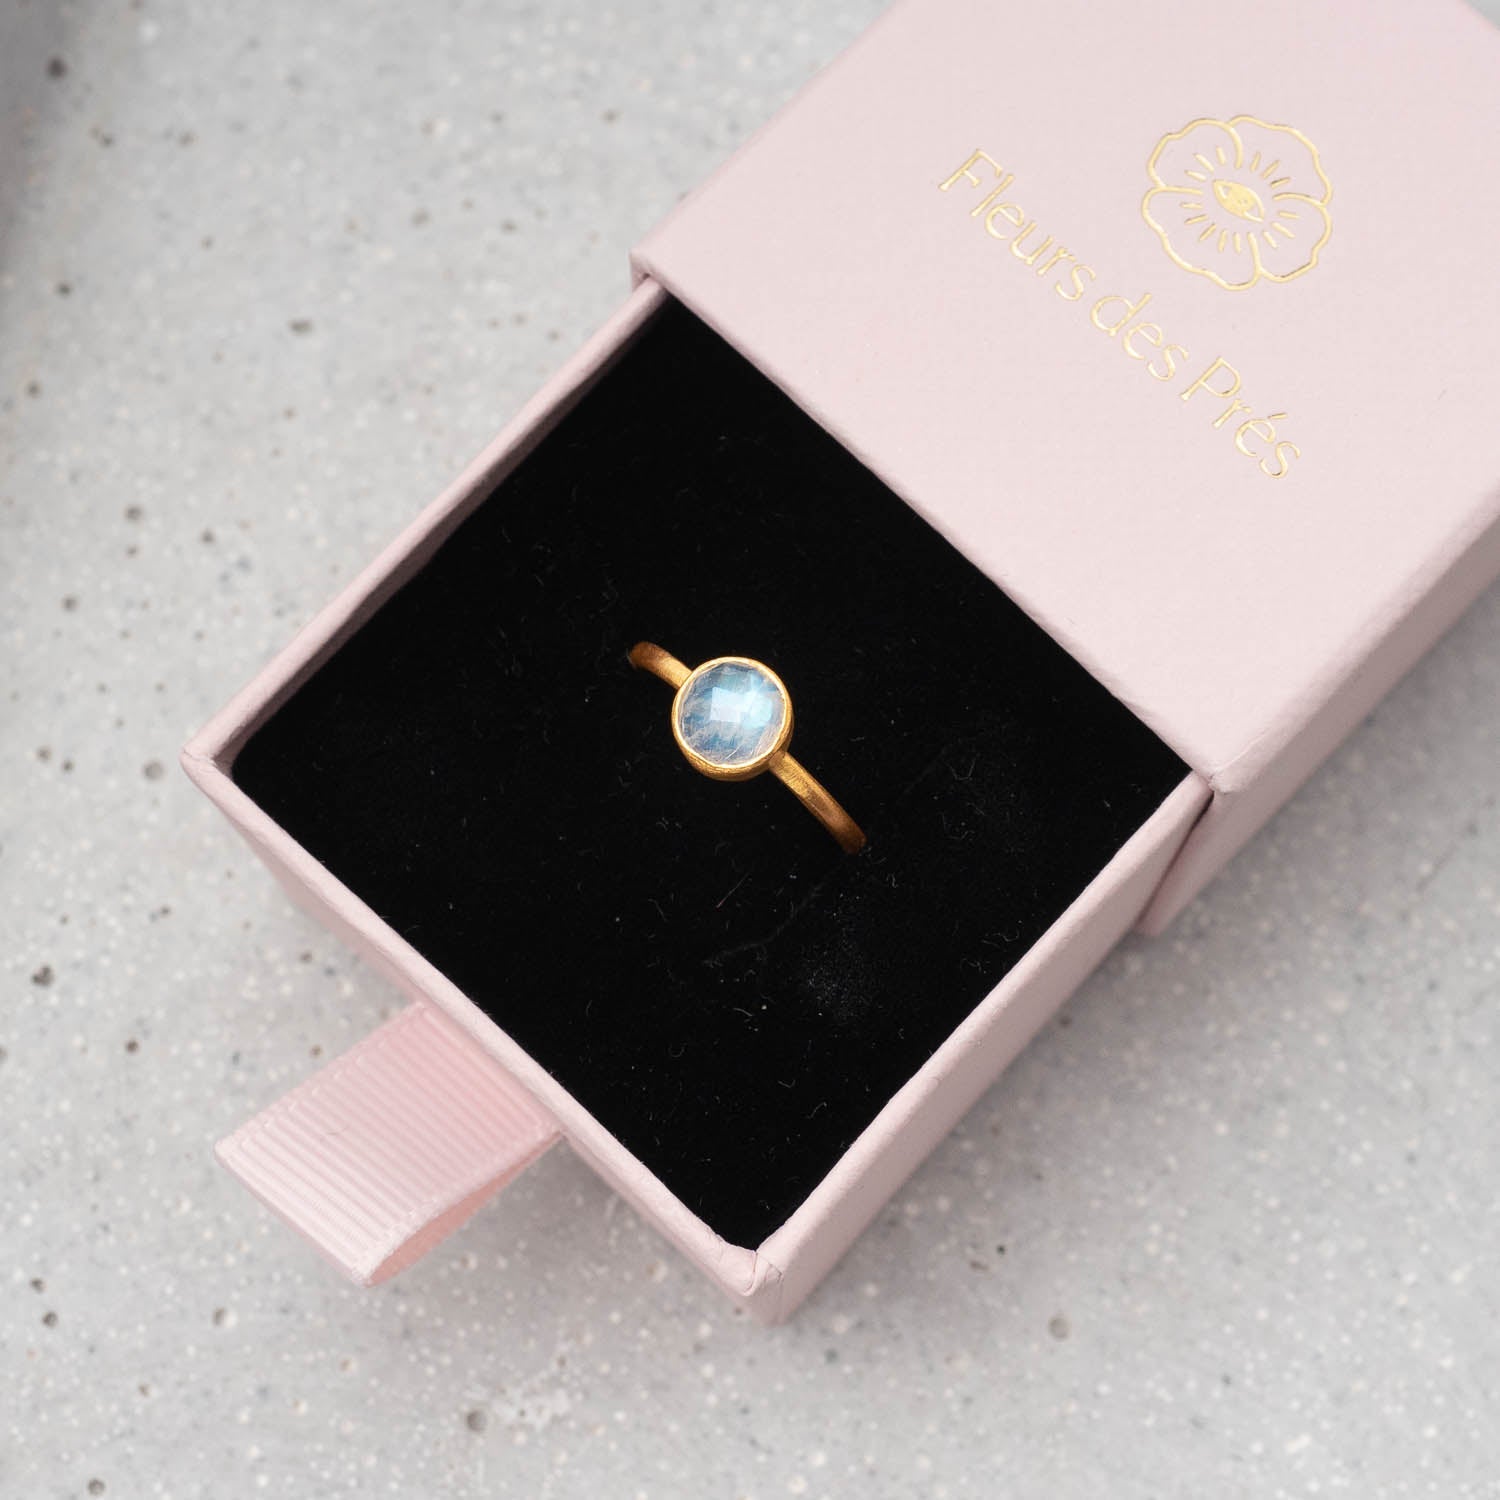 Ring Charlotte Moonstone - Fleurs des Prés Jewelry